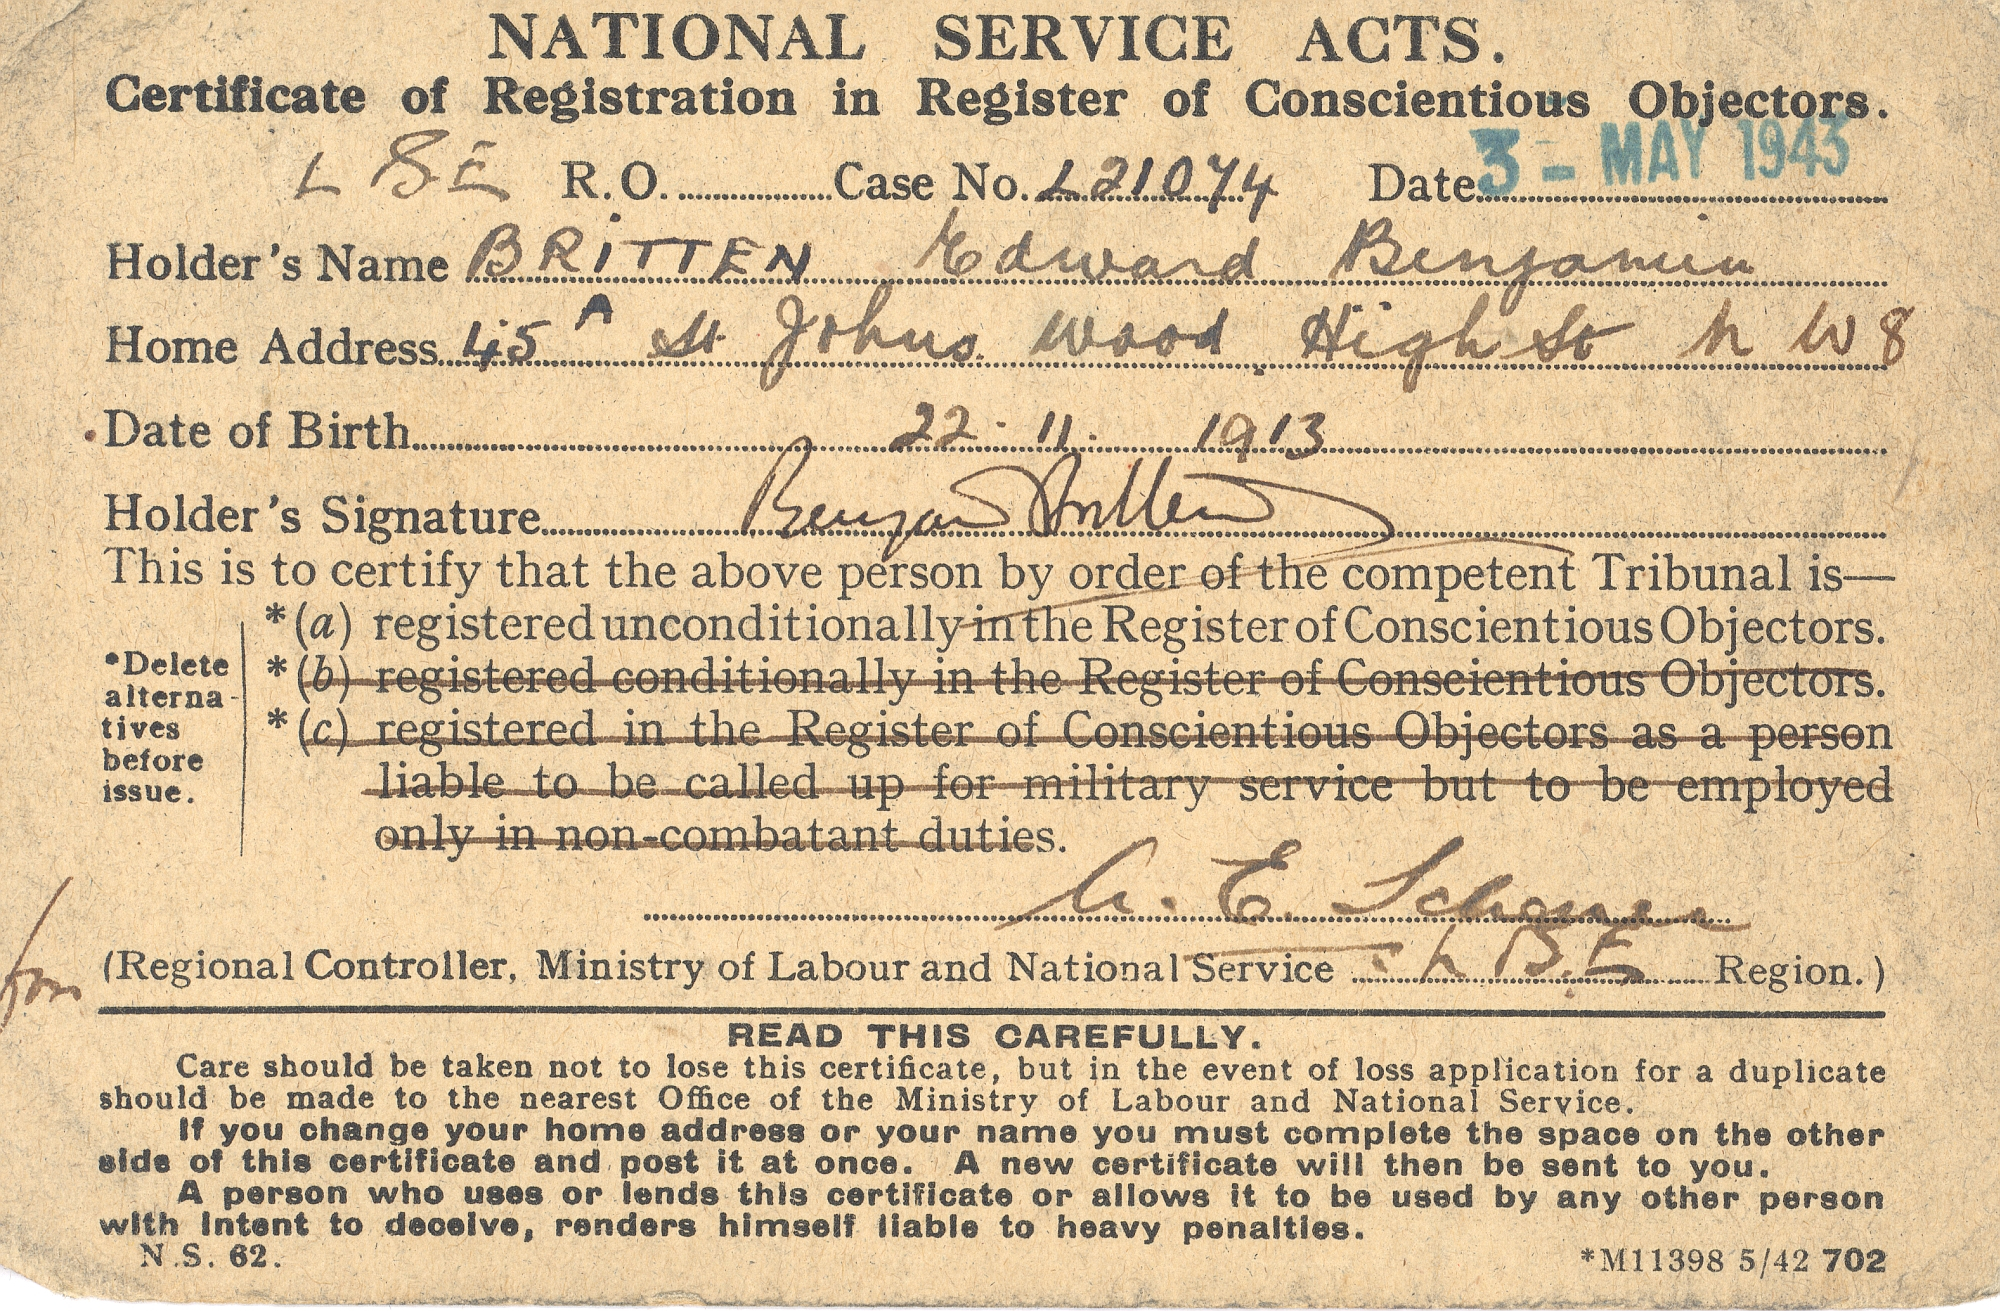 Benjamin Britten conscientious objector certificat